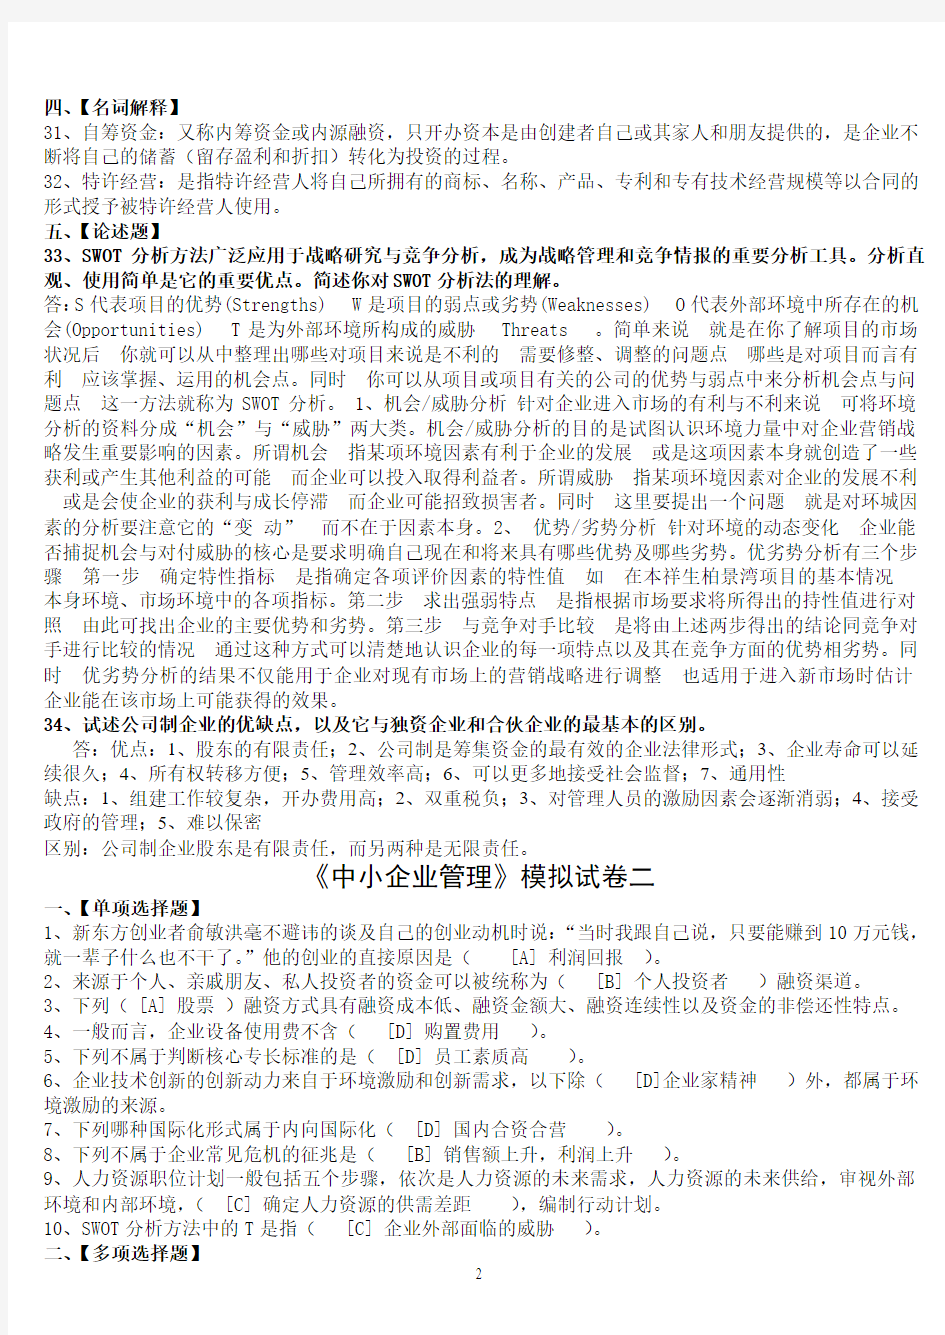 北京语言大学2013年3月期末考试《中小企业管理》模拟试卷答案